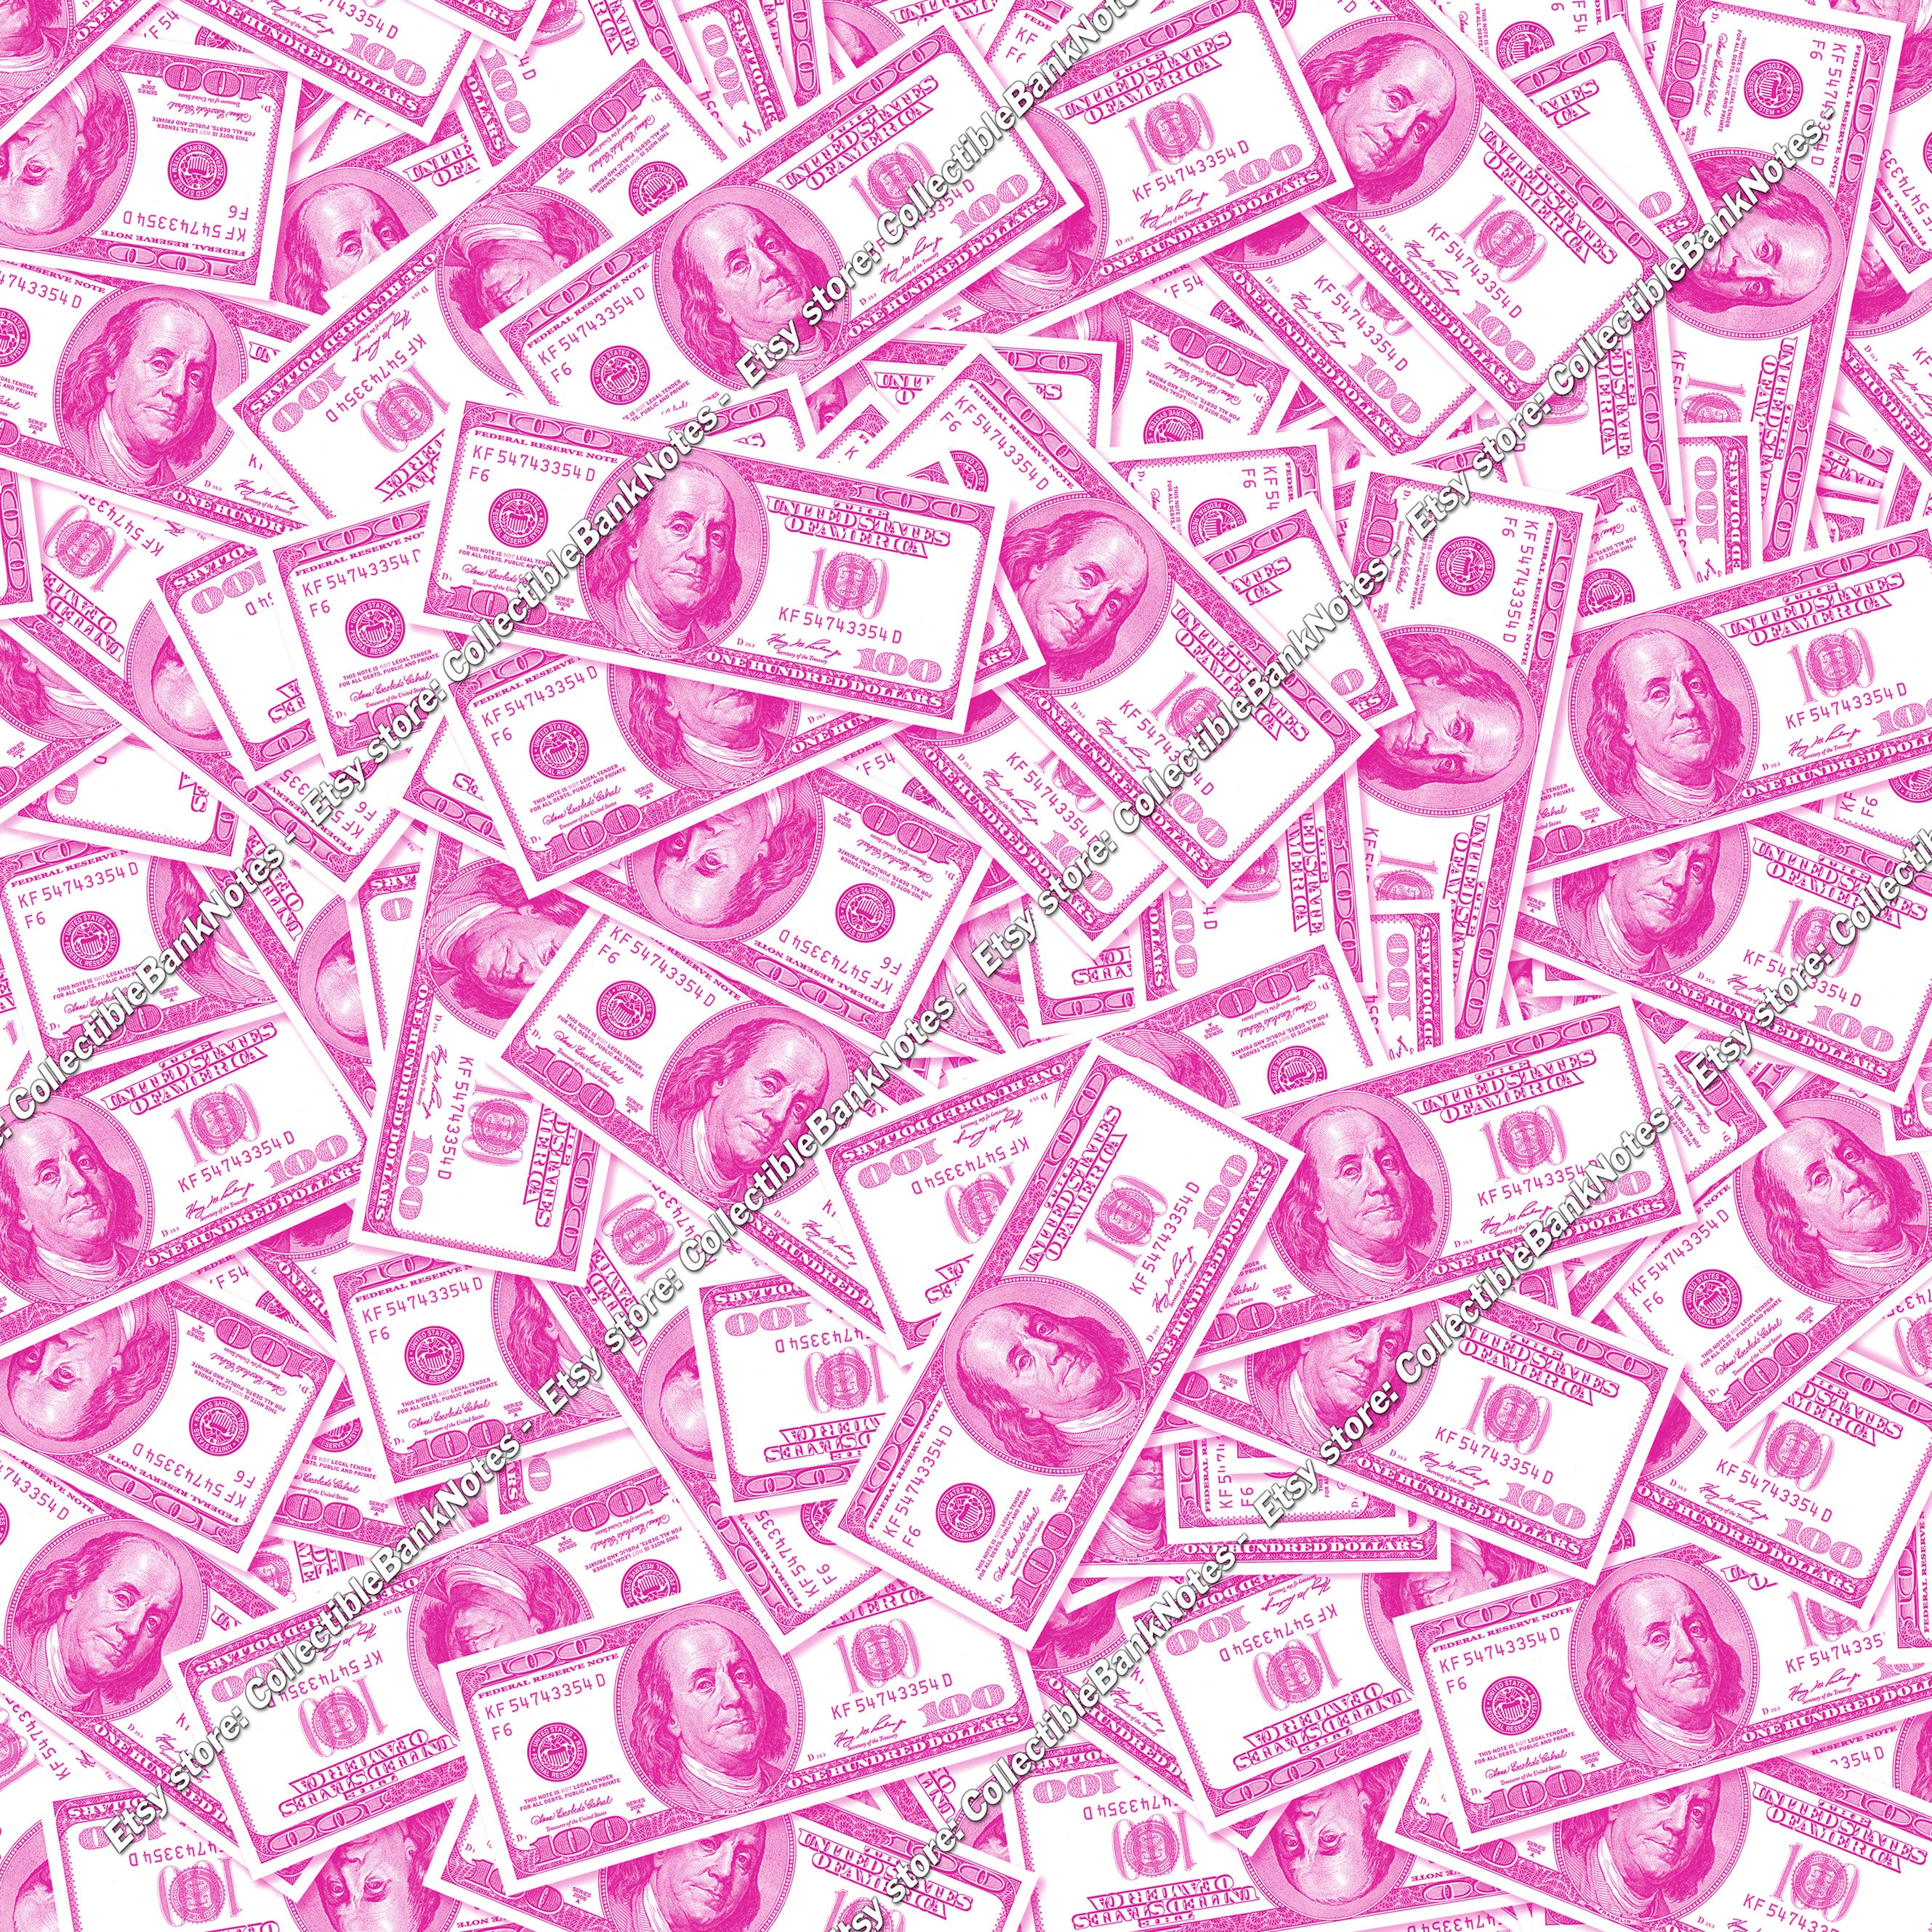 Hình nền tiền 100 đô la màu hồng: Bạn yêu thích sự độc đáo và sáng tạo? Hãy ngắm hình nền tiền 100 đô la màu hồng, để trải nghiệm sự khác biệt và thấy rằng thế giới xung quanh có nhiều điều thú vị đang chờ đợi bạn khám phá.